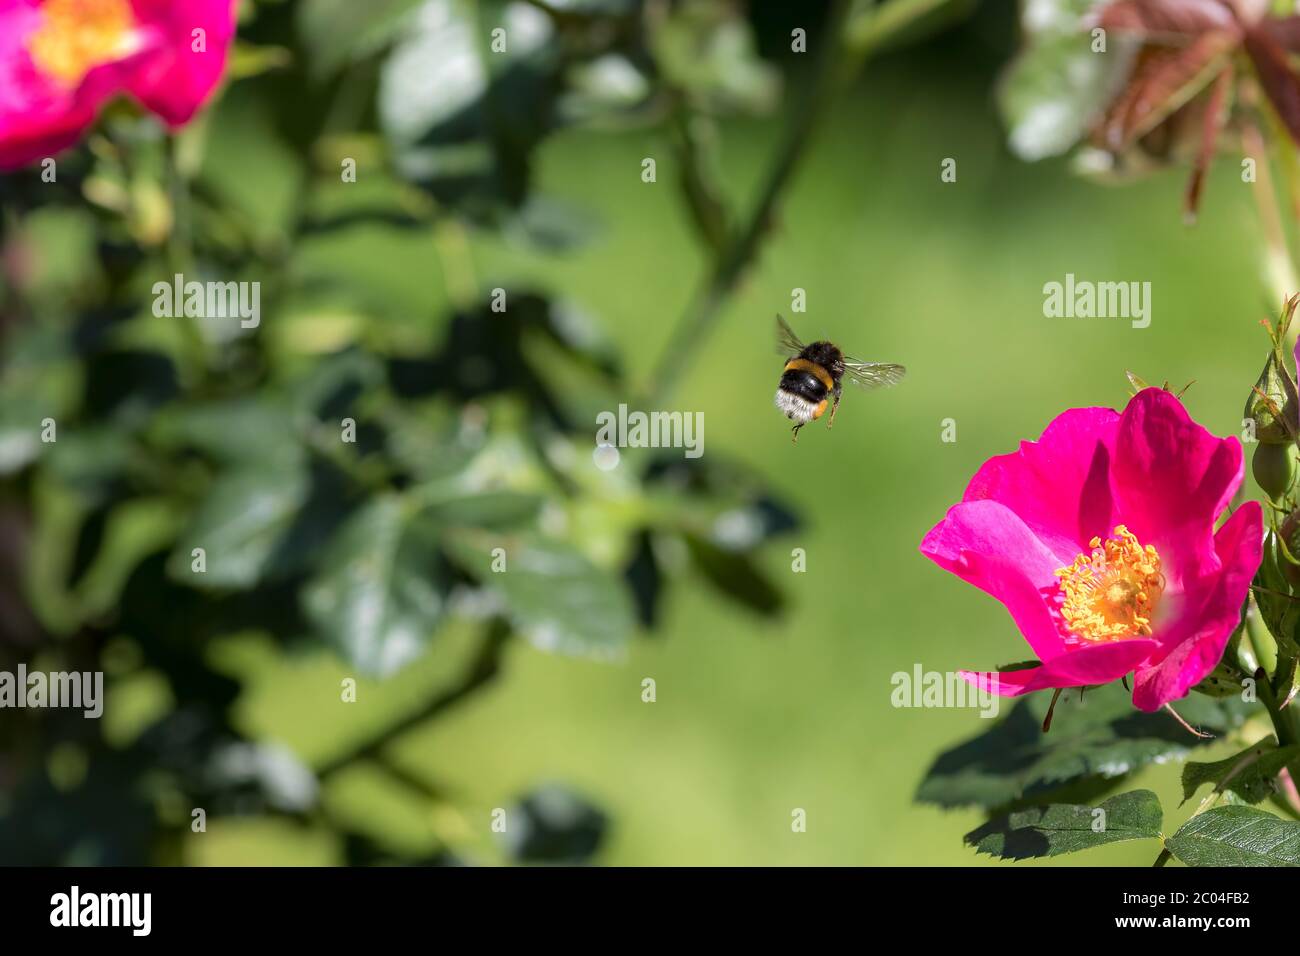 Polinización de abejas. Insecto de Bumblebee volando a una flor de rosa de jardín en primavera o verano. Abeja que se asomaba a mitad del aire por encima de los pétalos de color rosa caliente y el estambre amarillo Foto de stock